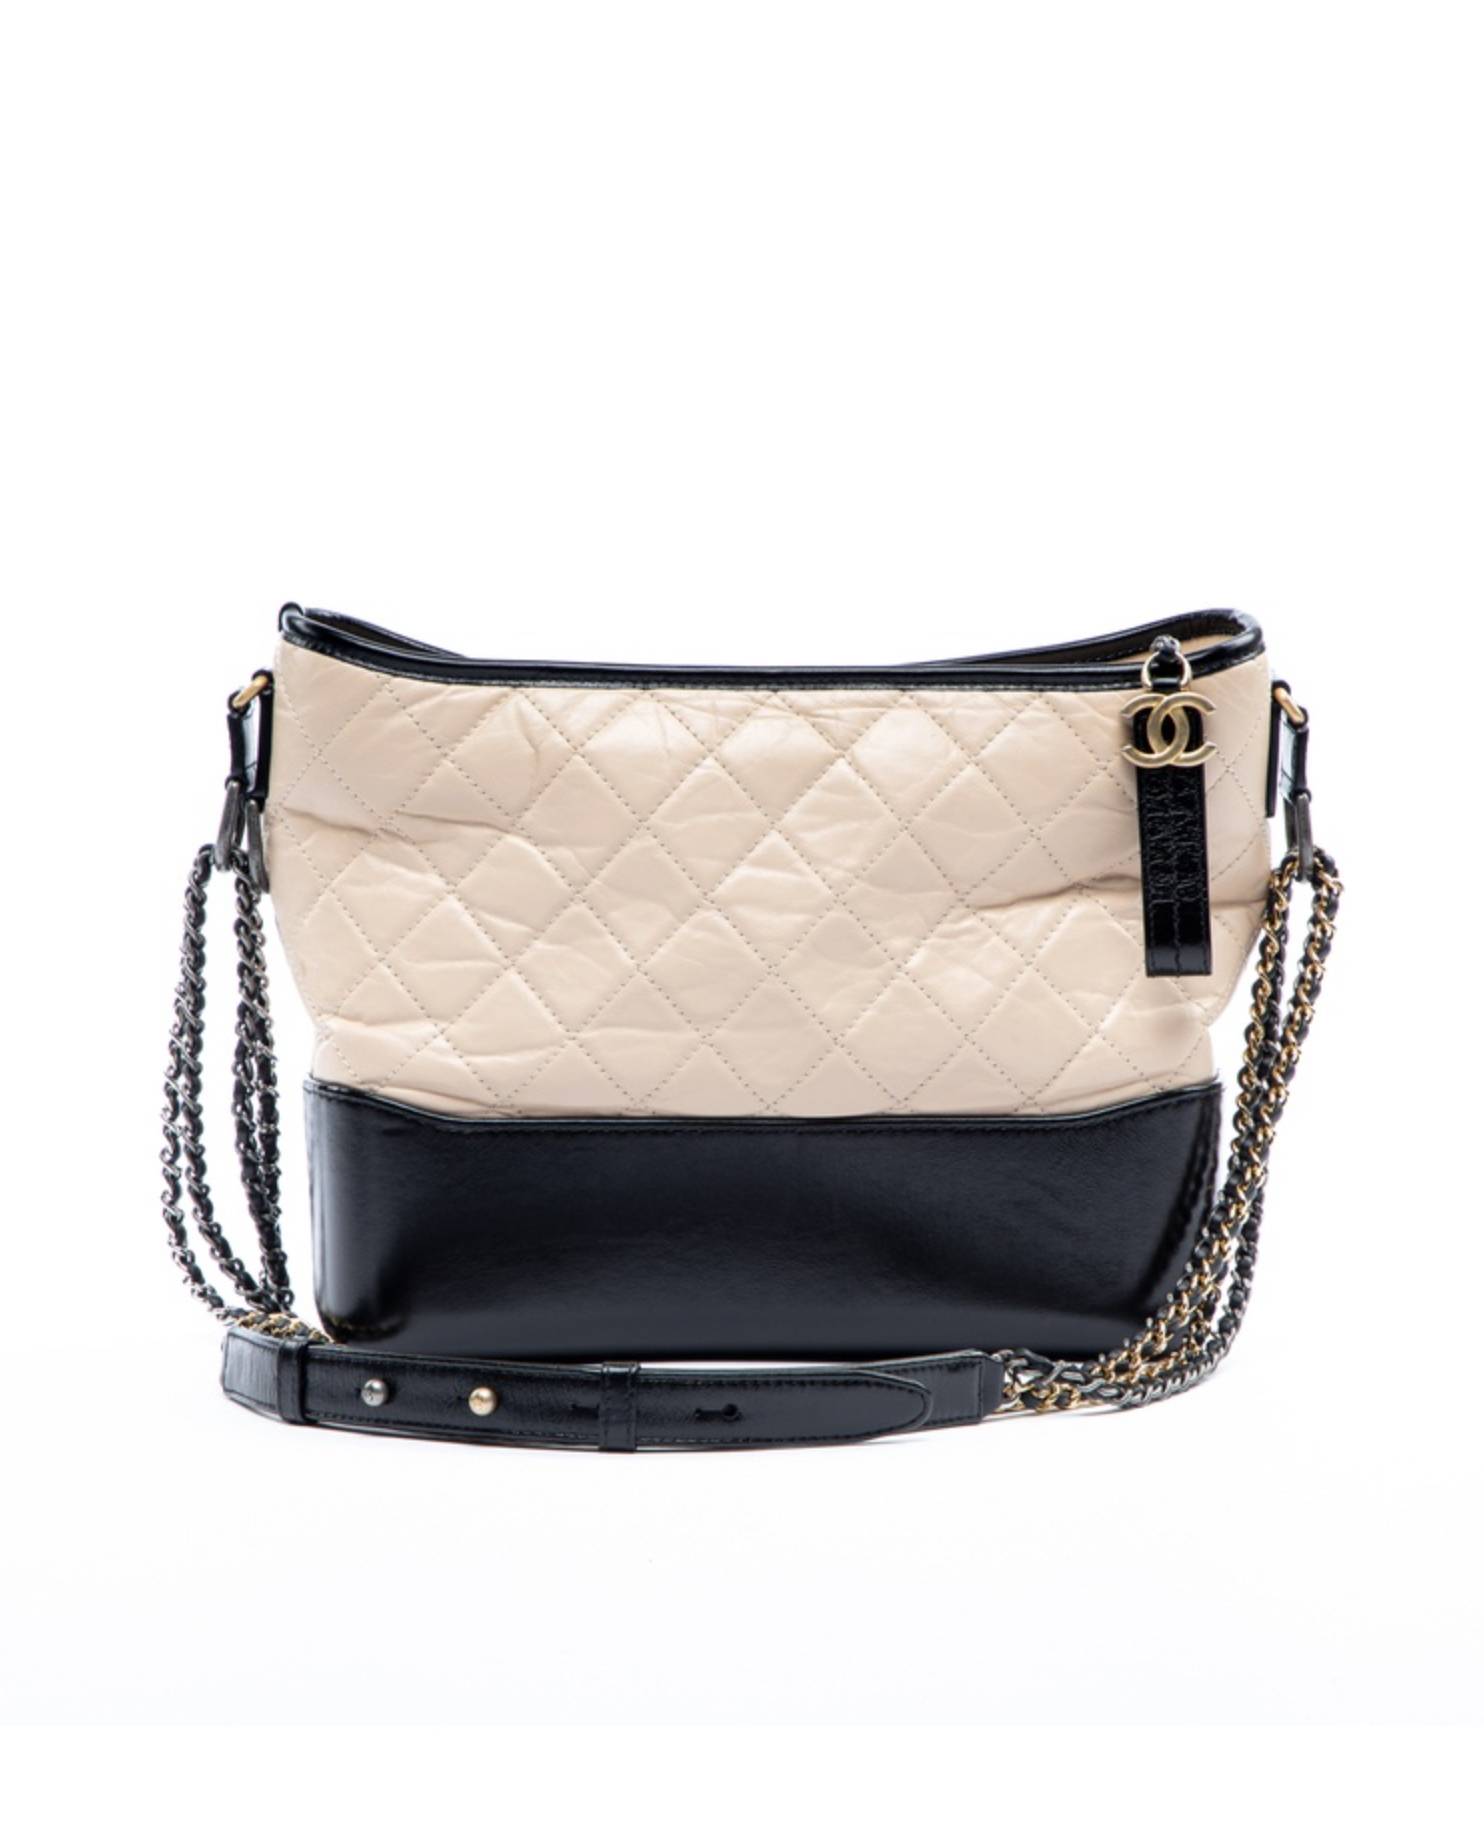 Chanel Gabrielle Leather Handbag $22,500